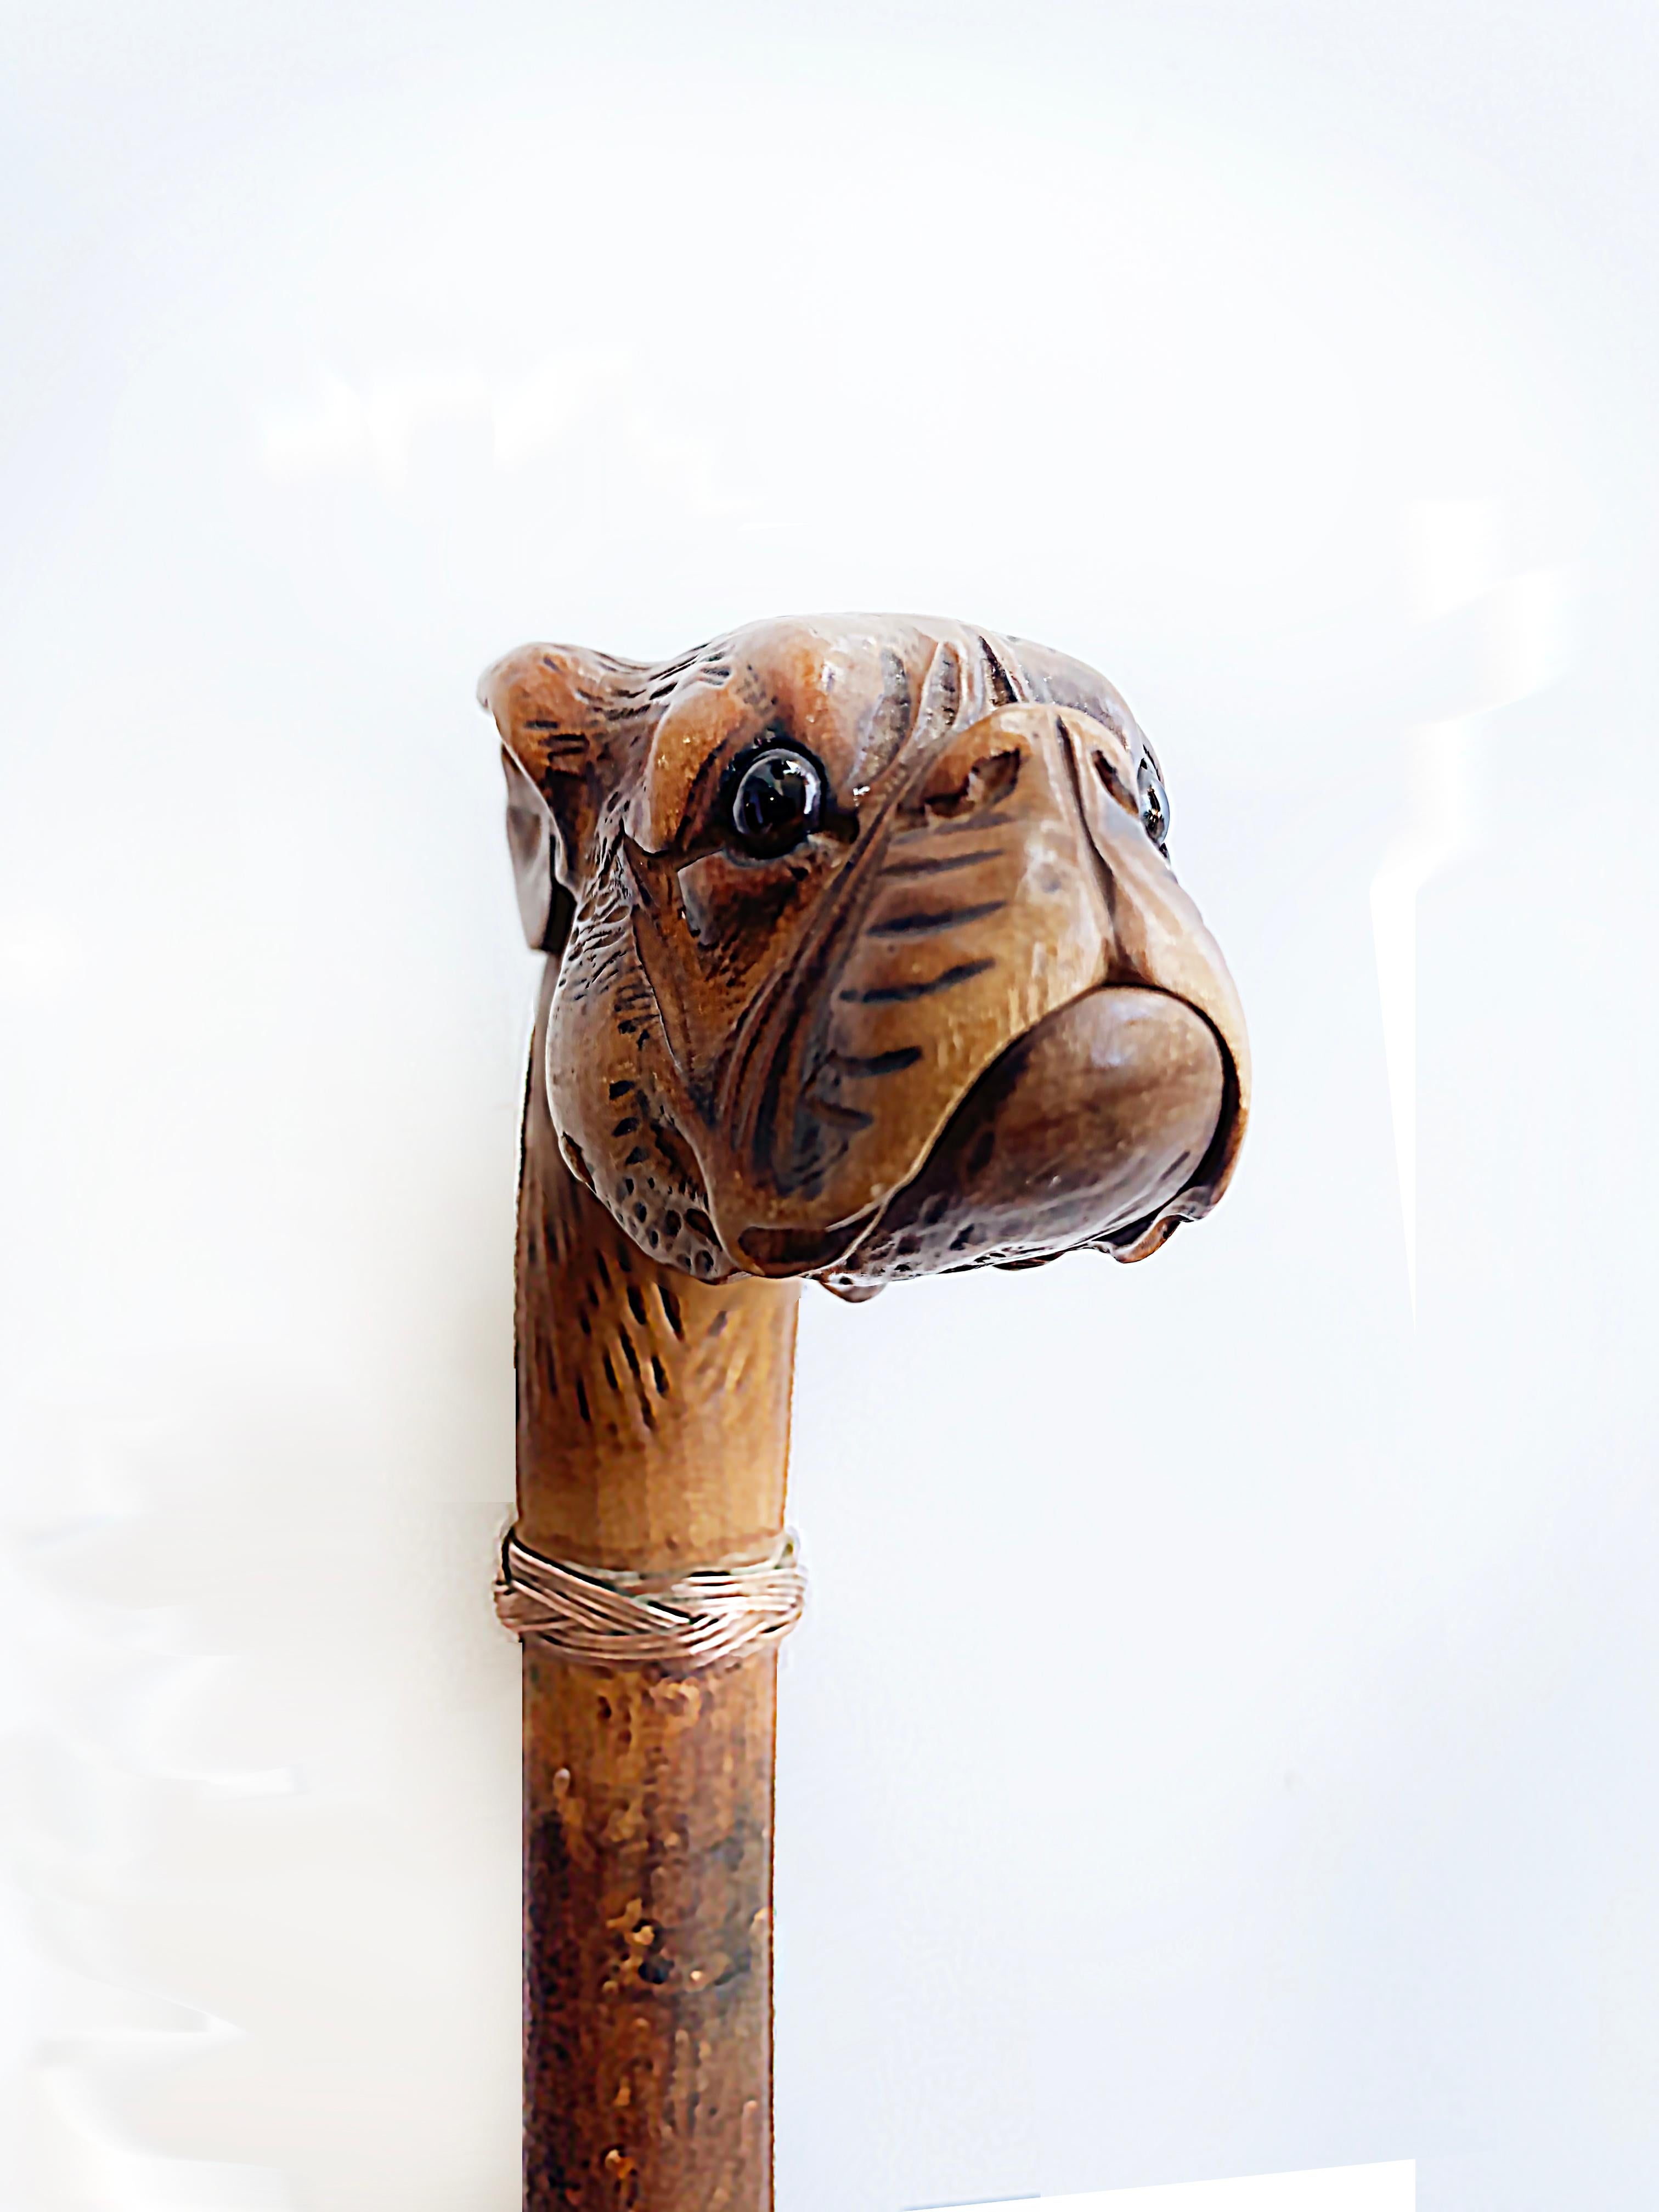 Antike Mops Französisch Stier-Hund Handschuhhalter Spazierstock Stock

Zum Verkauf angeboten wird eine antike 19. Jahrhundert geschnitzt Hartholz Handschuhhalter Spazierstock. Der handgeschnitzte Kopf einer französischen Bulldogge oder eines